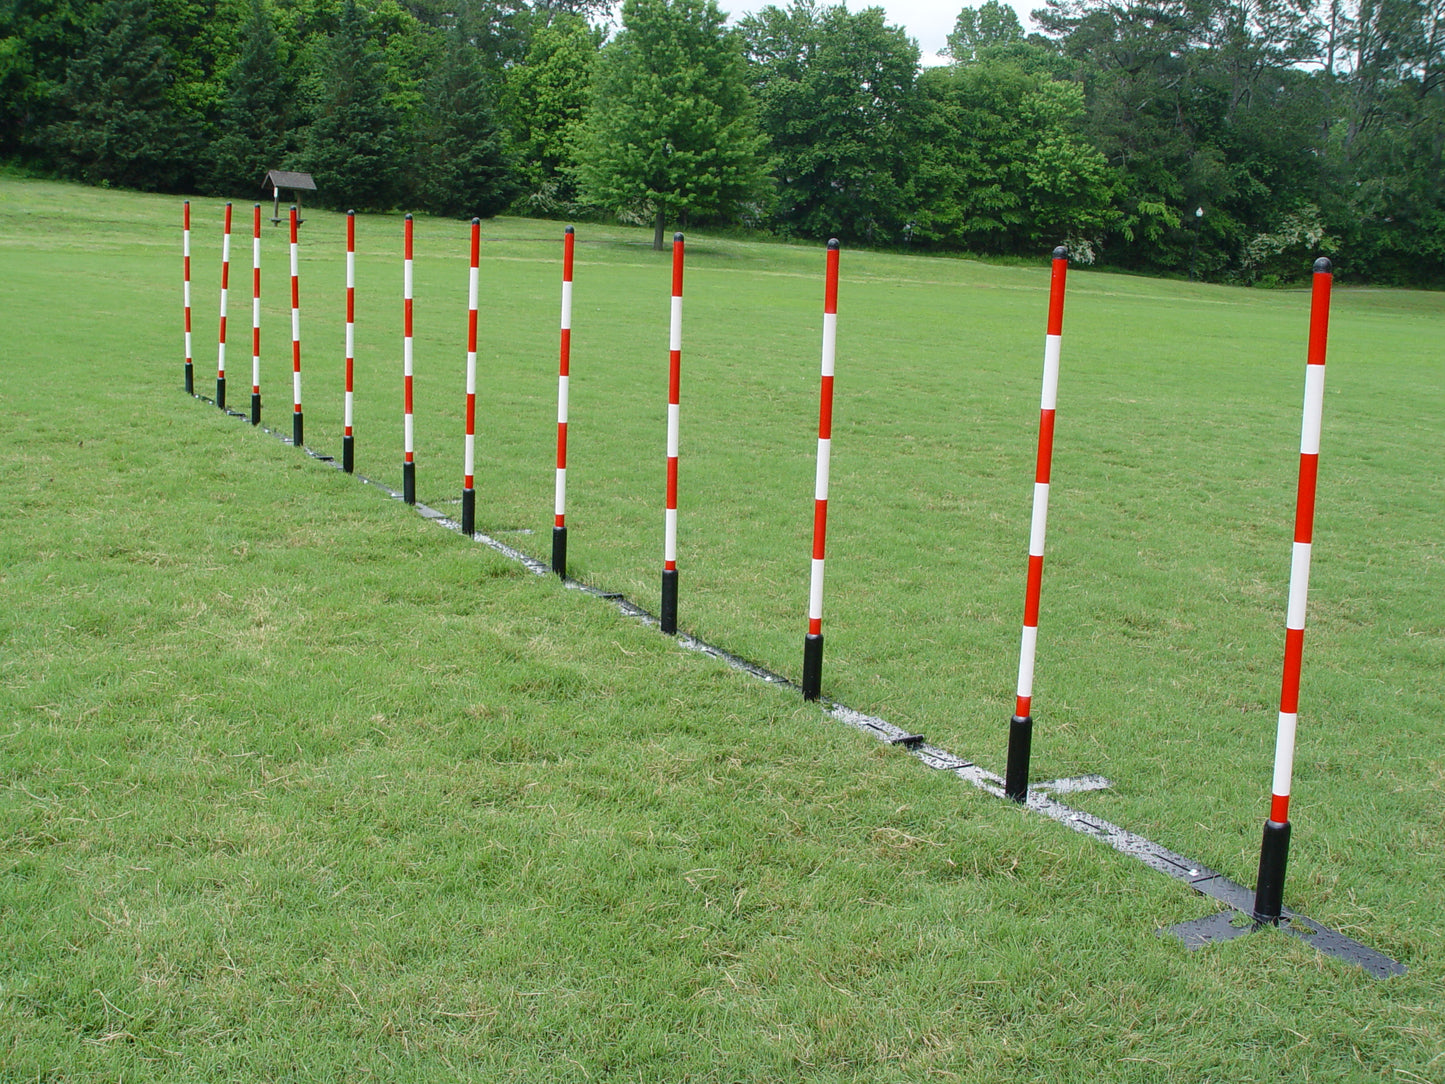 12 Pole Weave Pole Set with a Fixed Pole Space of 24" - Dog Agility USA